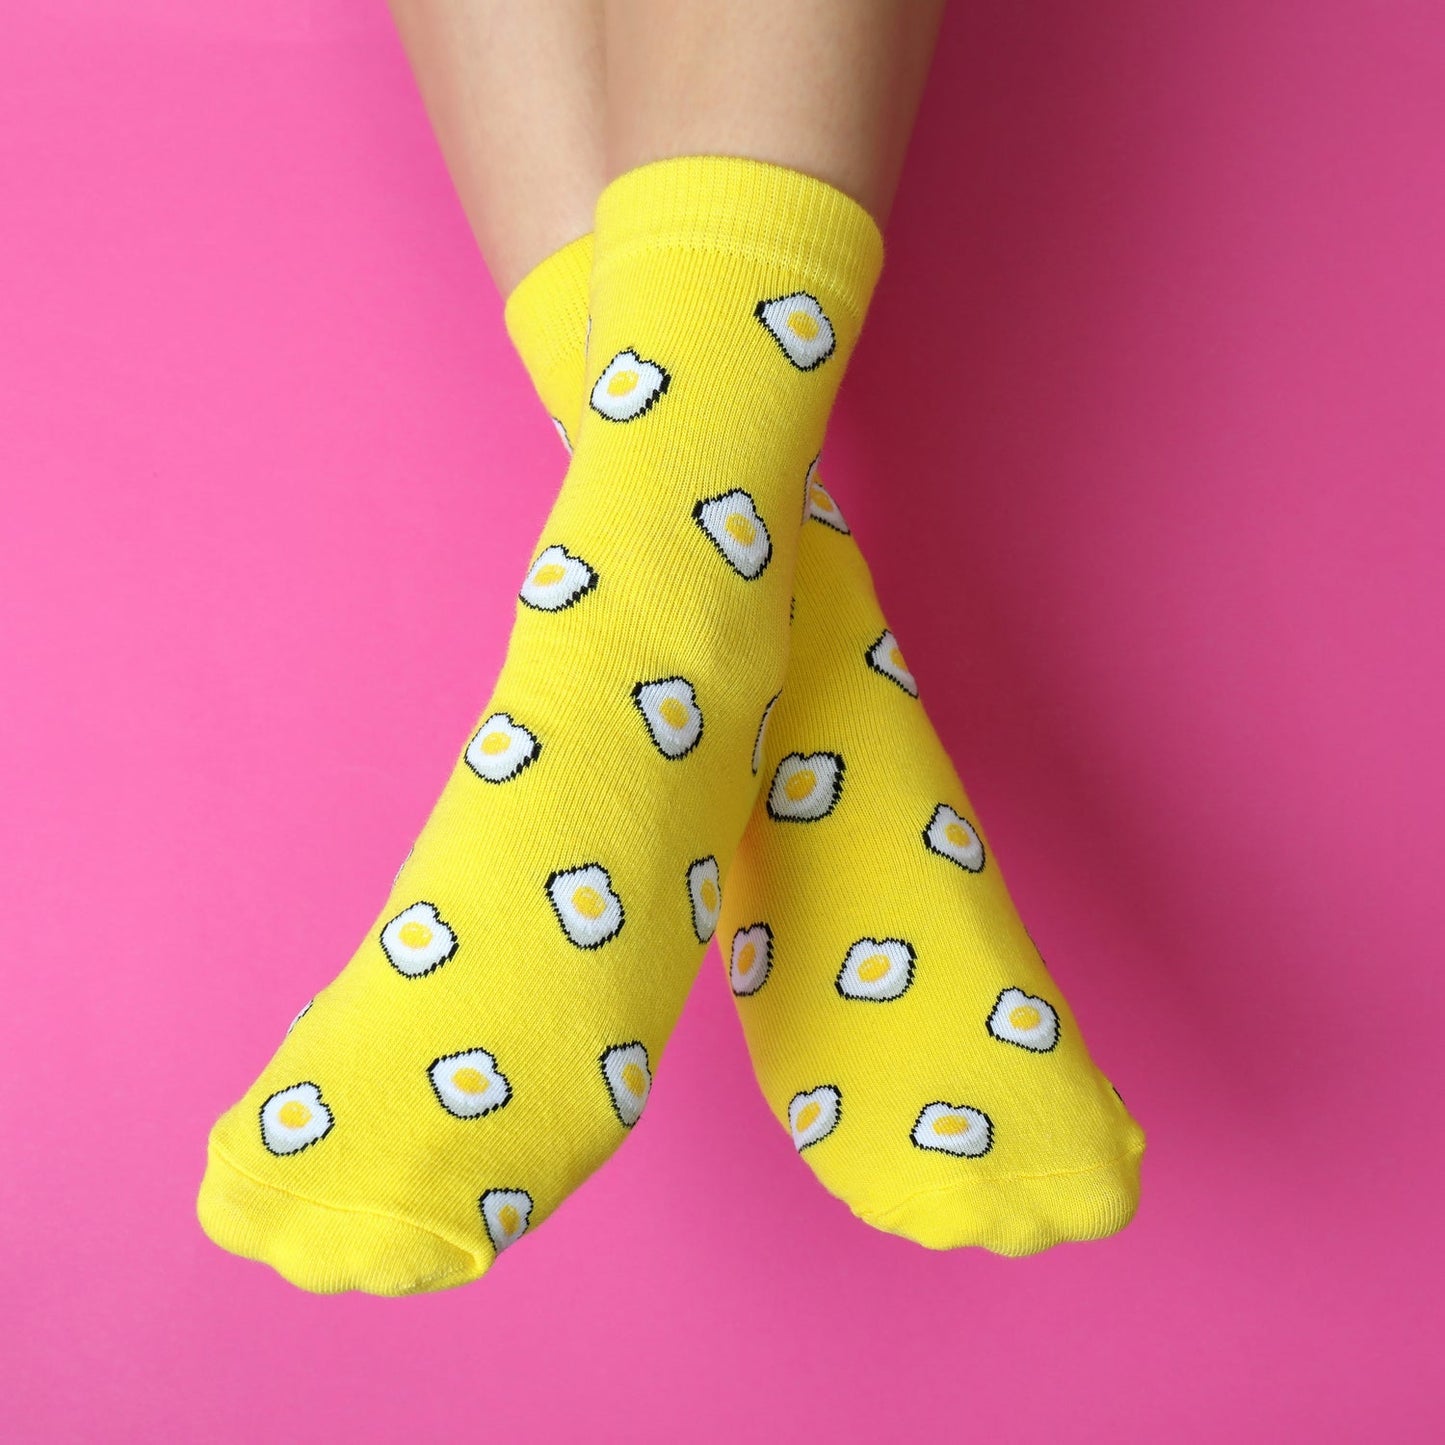 7373 Mix Design socks for Women DeoDap